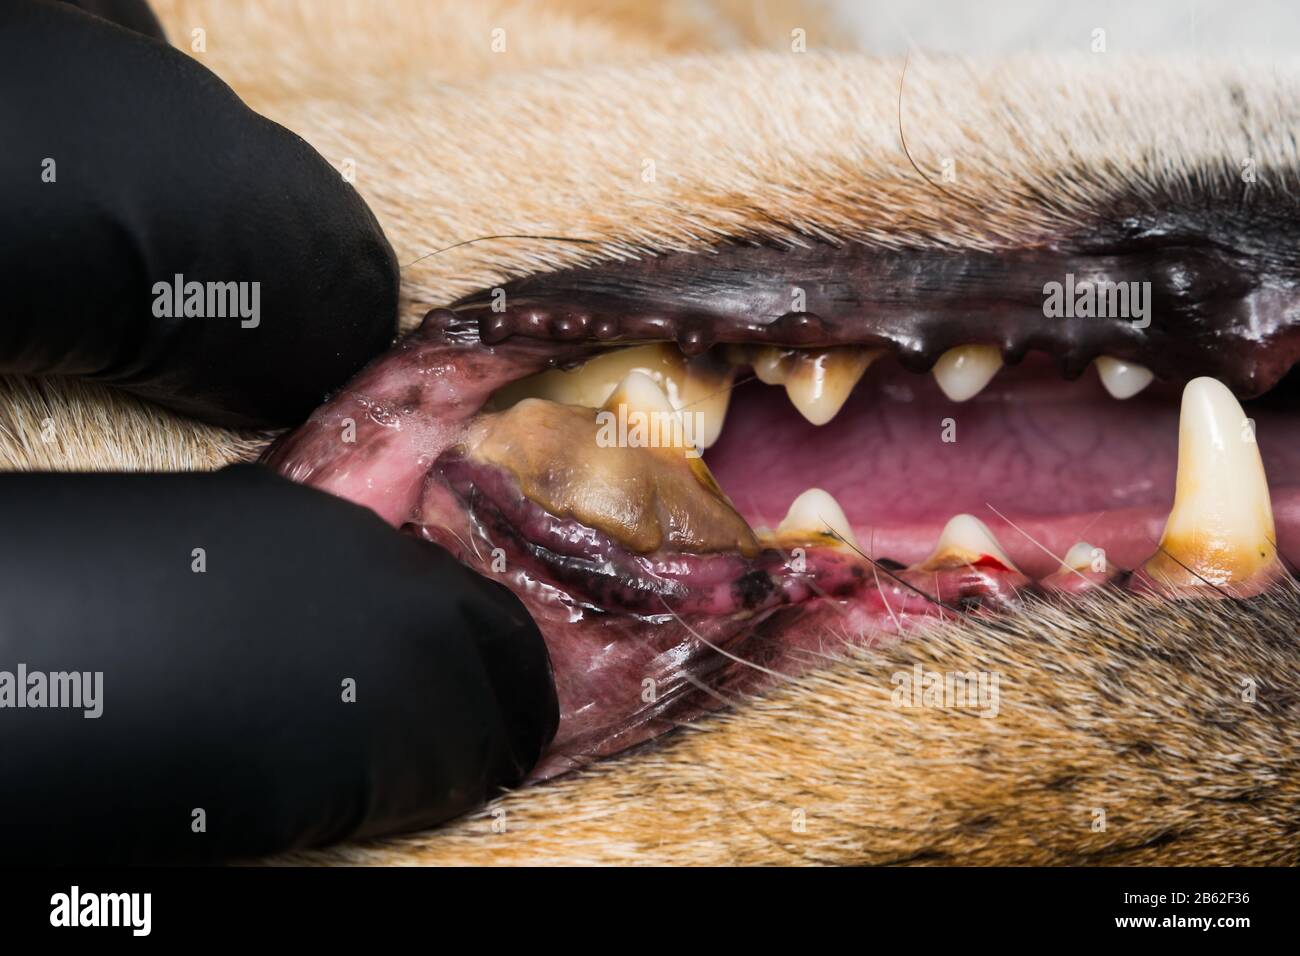 Hund mit Zahnfleischentzündung und Zähne mit Zahnstein Stockfotografie -  Alamy